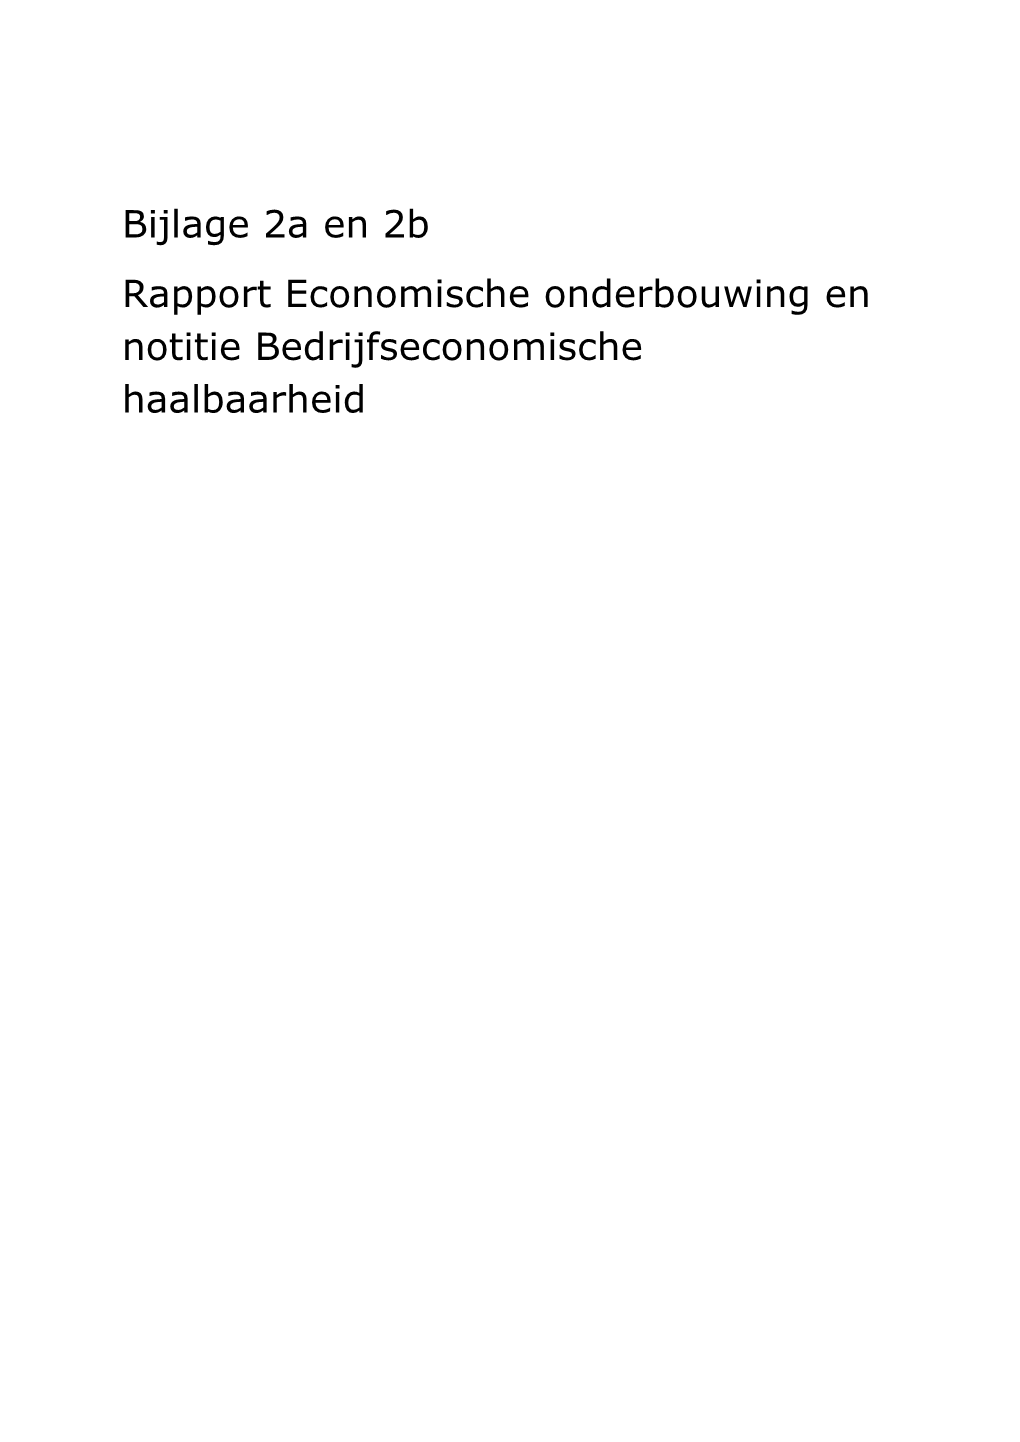 Rapport Economische Onderbouwing En Notitie Bedrijfseconomische Haalbaarheid